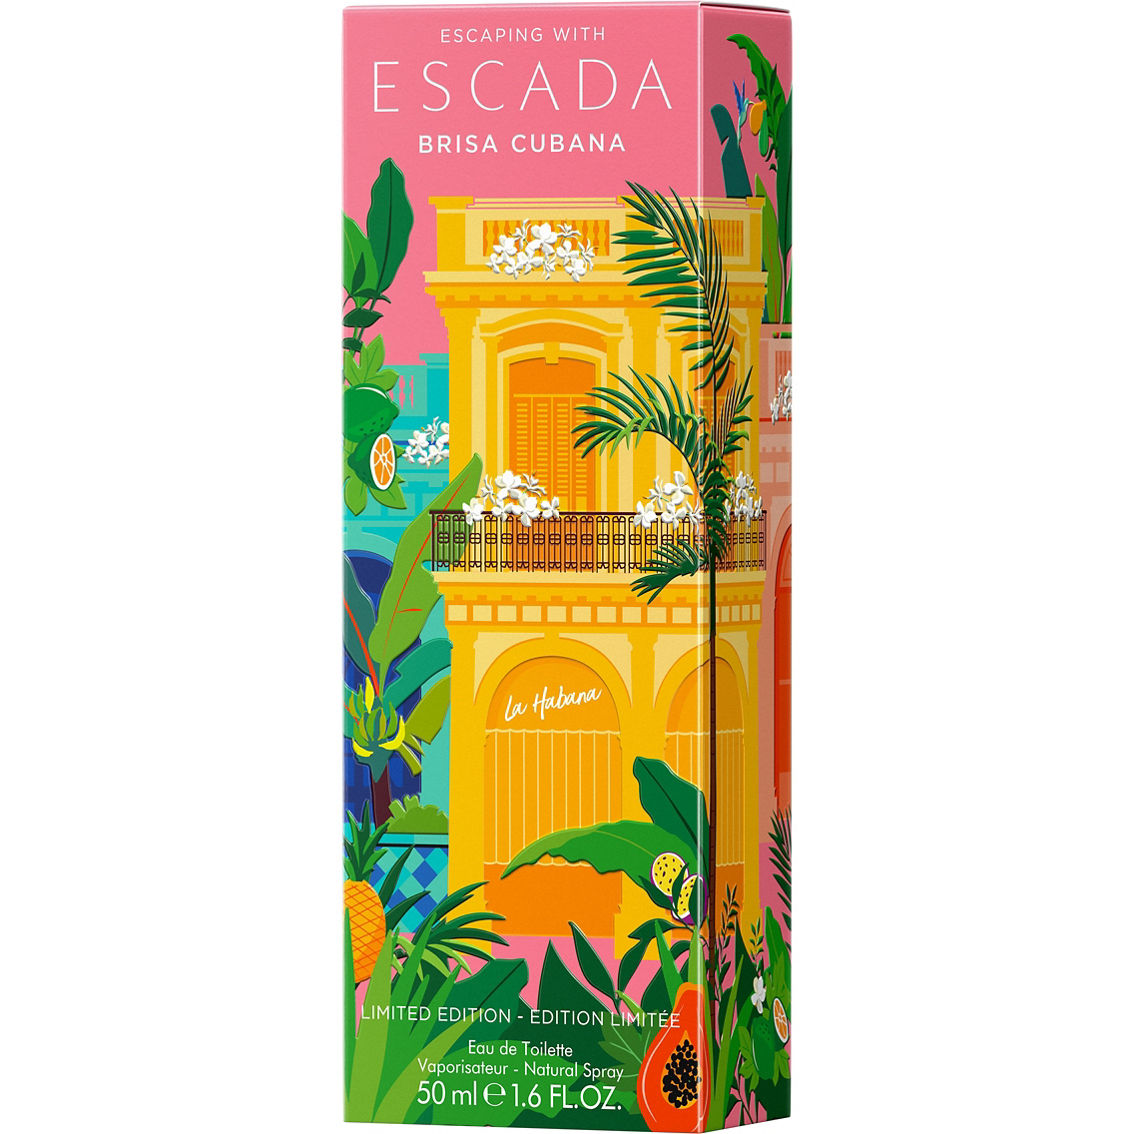 Escada Brisa Cubana Limited Edition Eau de Toilette Spray - Image 3 of 3